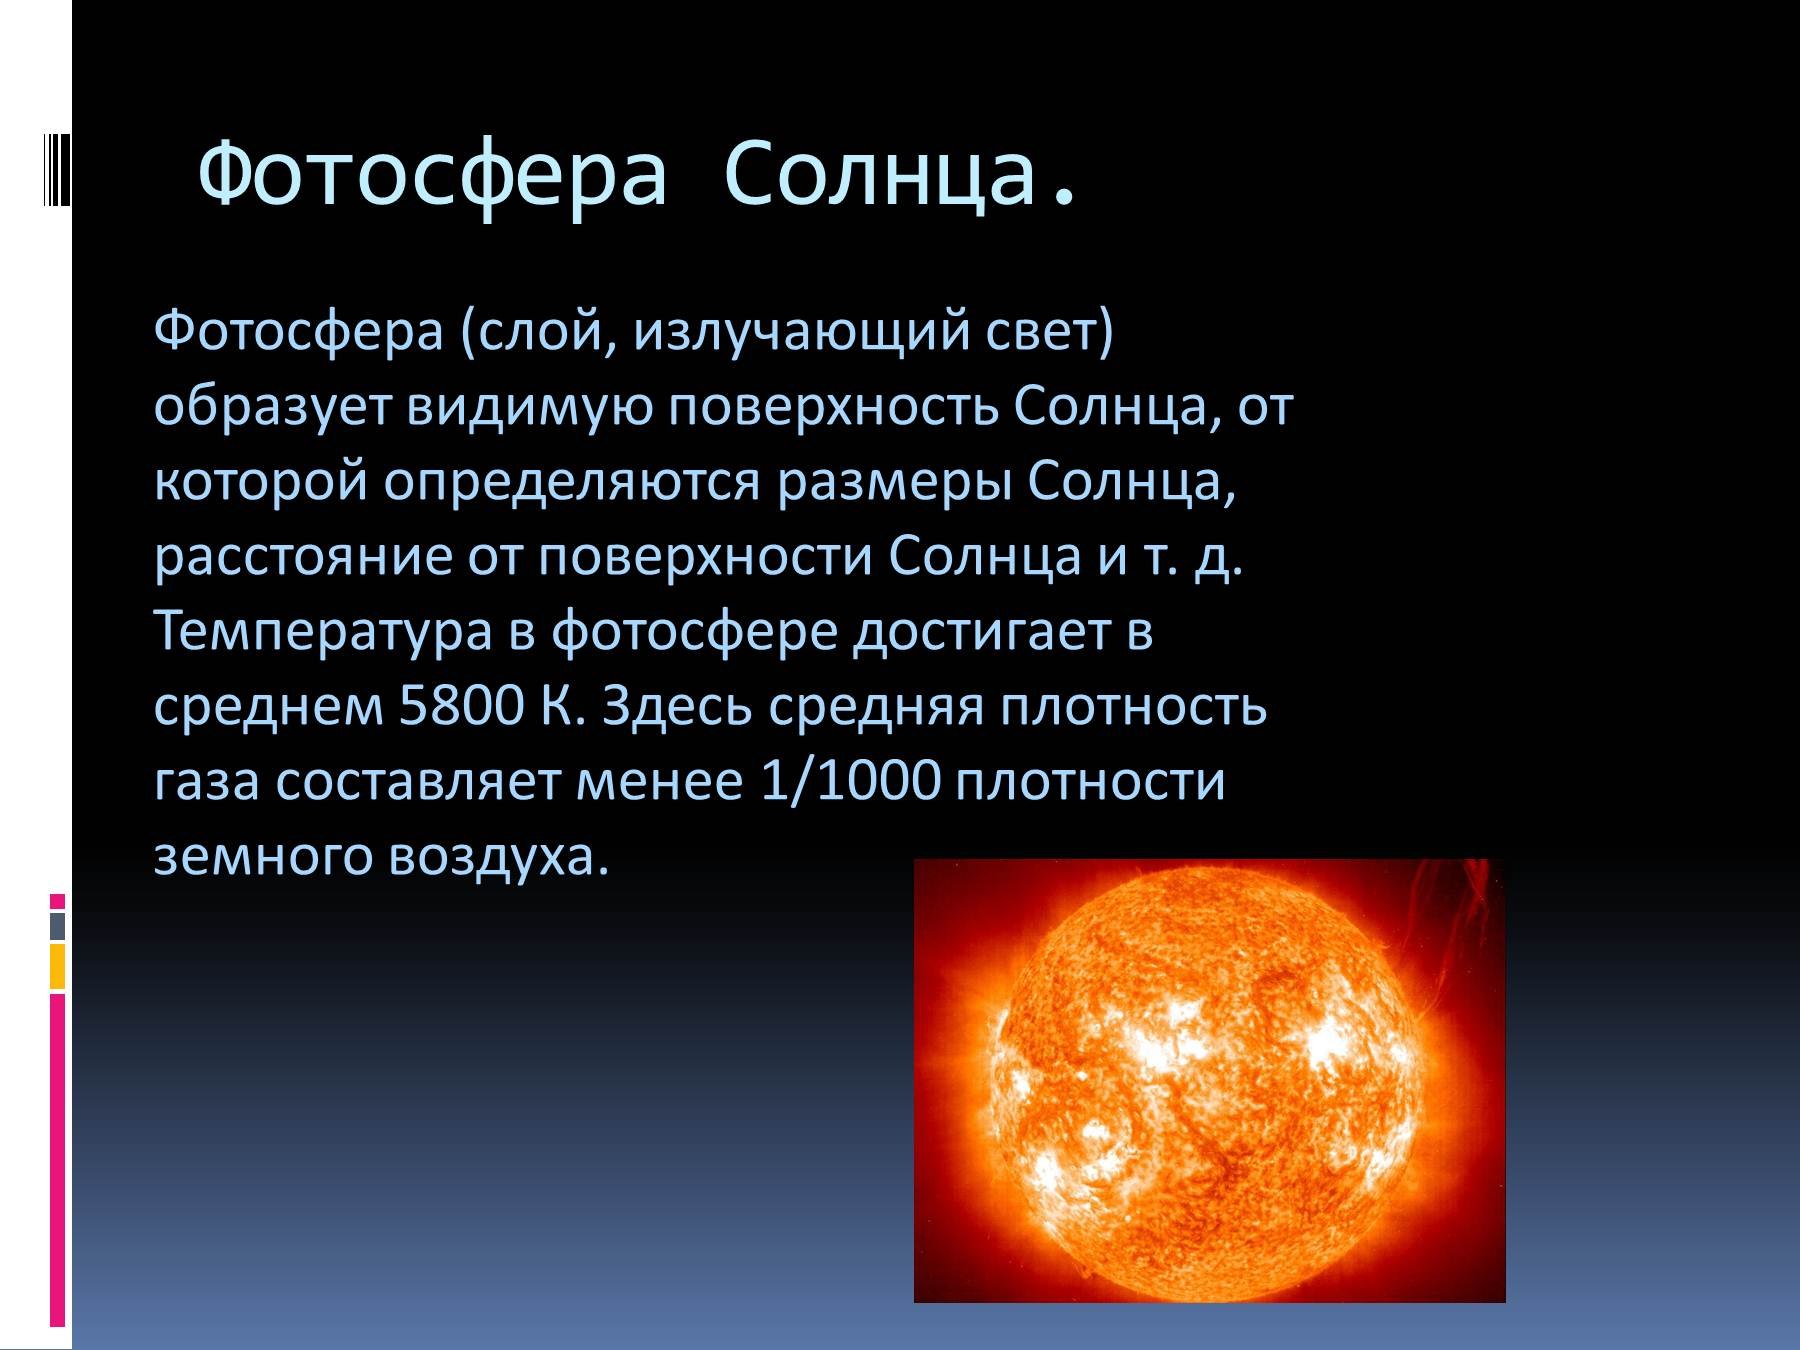 Элементы составляющие атмосферы солнца. Строение солнца Фотосфера. Внутреннее строение солнца Фотосфера. Строение солнца хромосфера. Описание солнца.